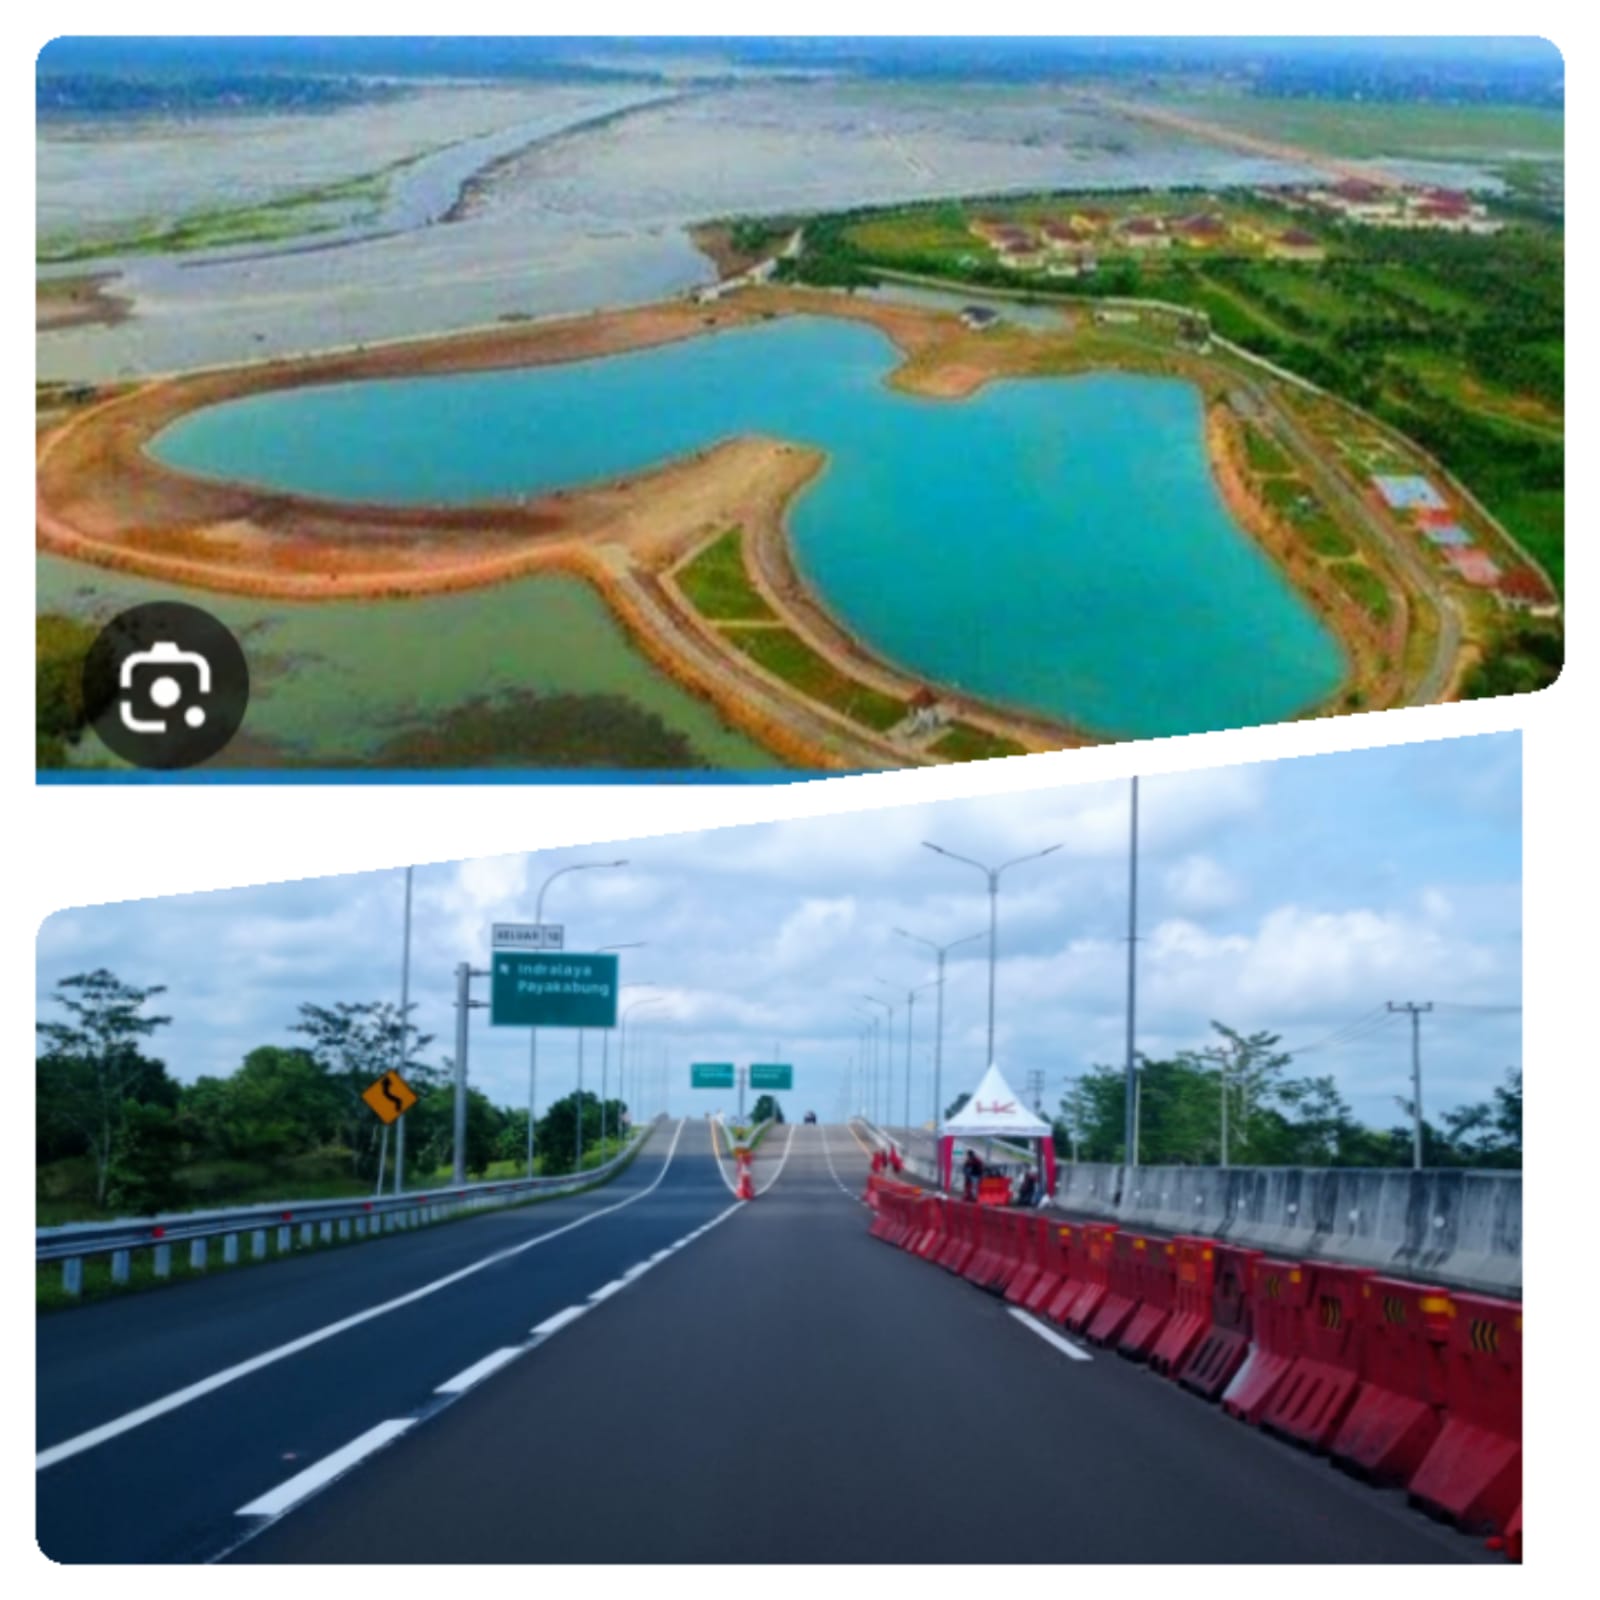 Tol Terindah di JTTS Simpang Indralaya-Prabumulih, Dibuka Permanen 30 Agustus 2023, Dimana Gerbang Tolnya?